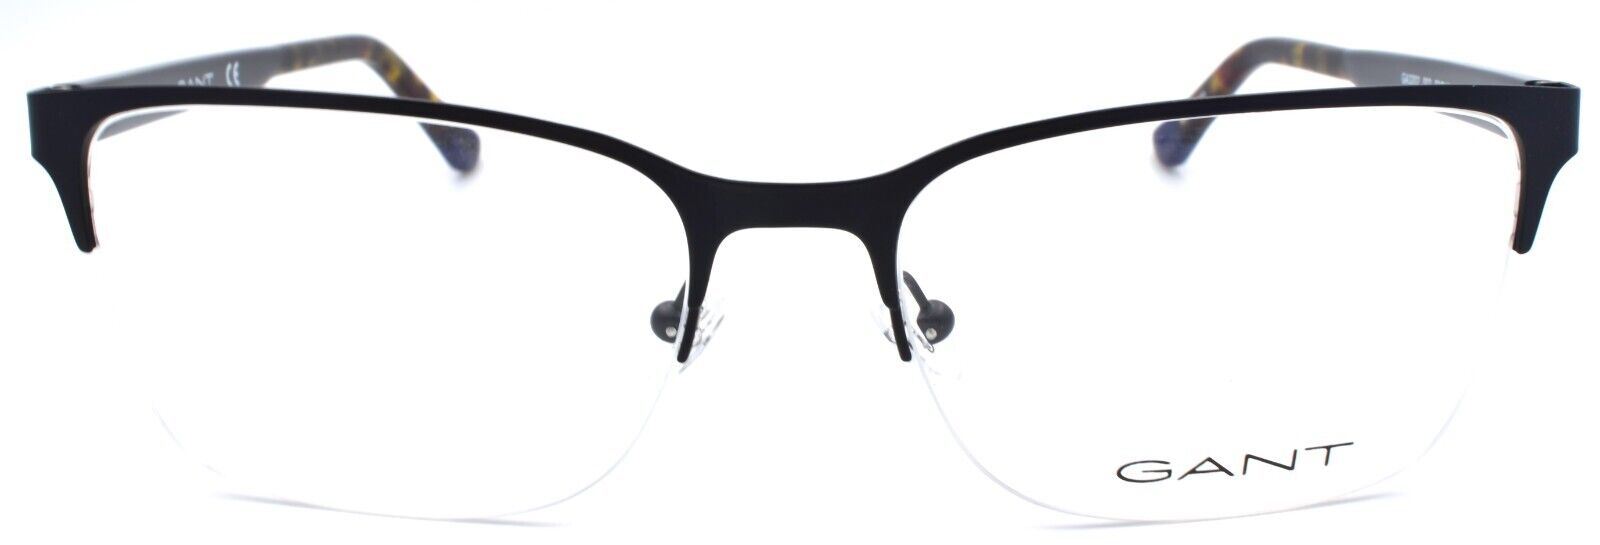 2-GANT GA3202 002 Men's Eyeglasses Frames Half-rim Large 58-18-150 Matte Black-889214125866-IKSpecs